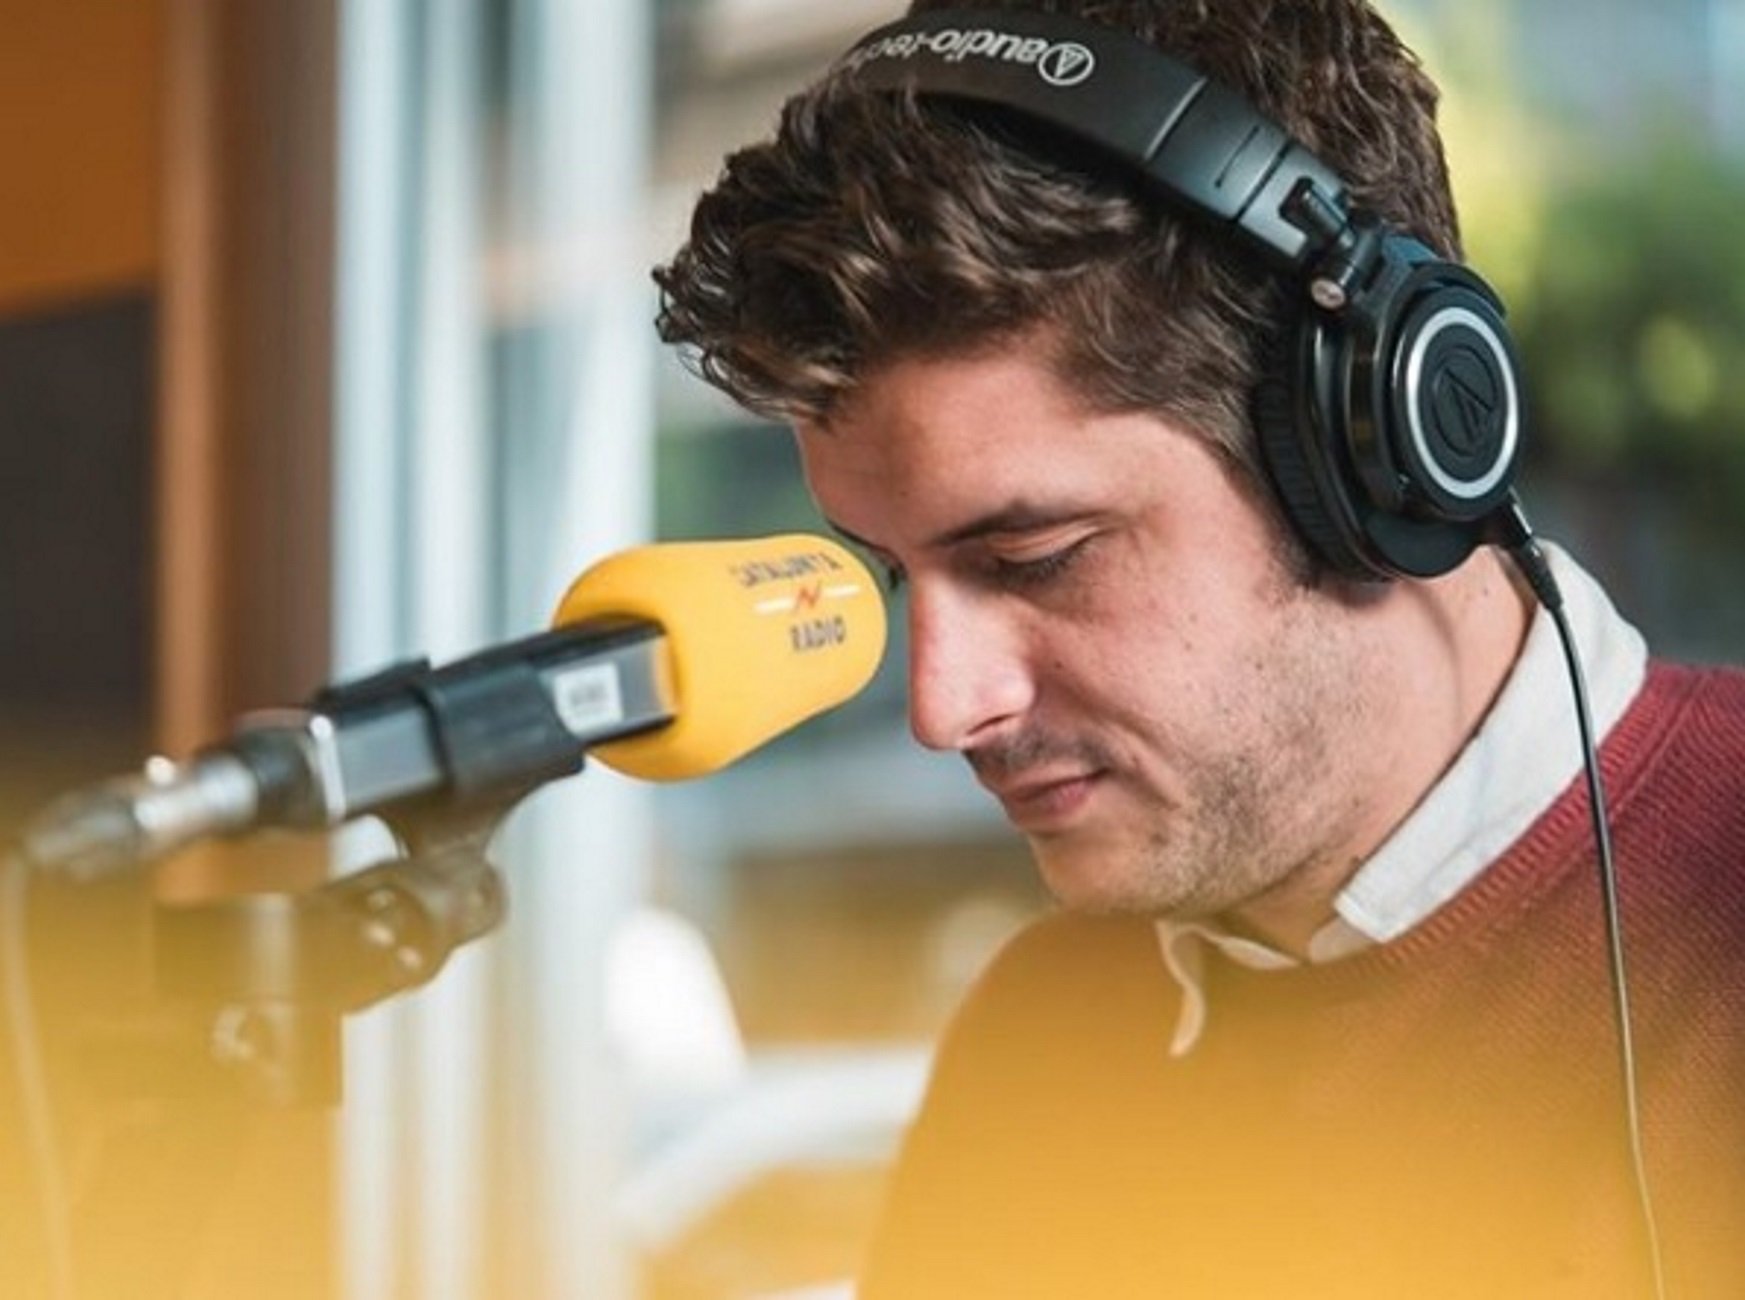 Un presentador de Catalunya Ràdio emociona a los oyentes recordando a su tío muerto de cáncer